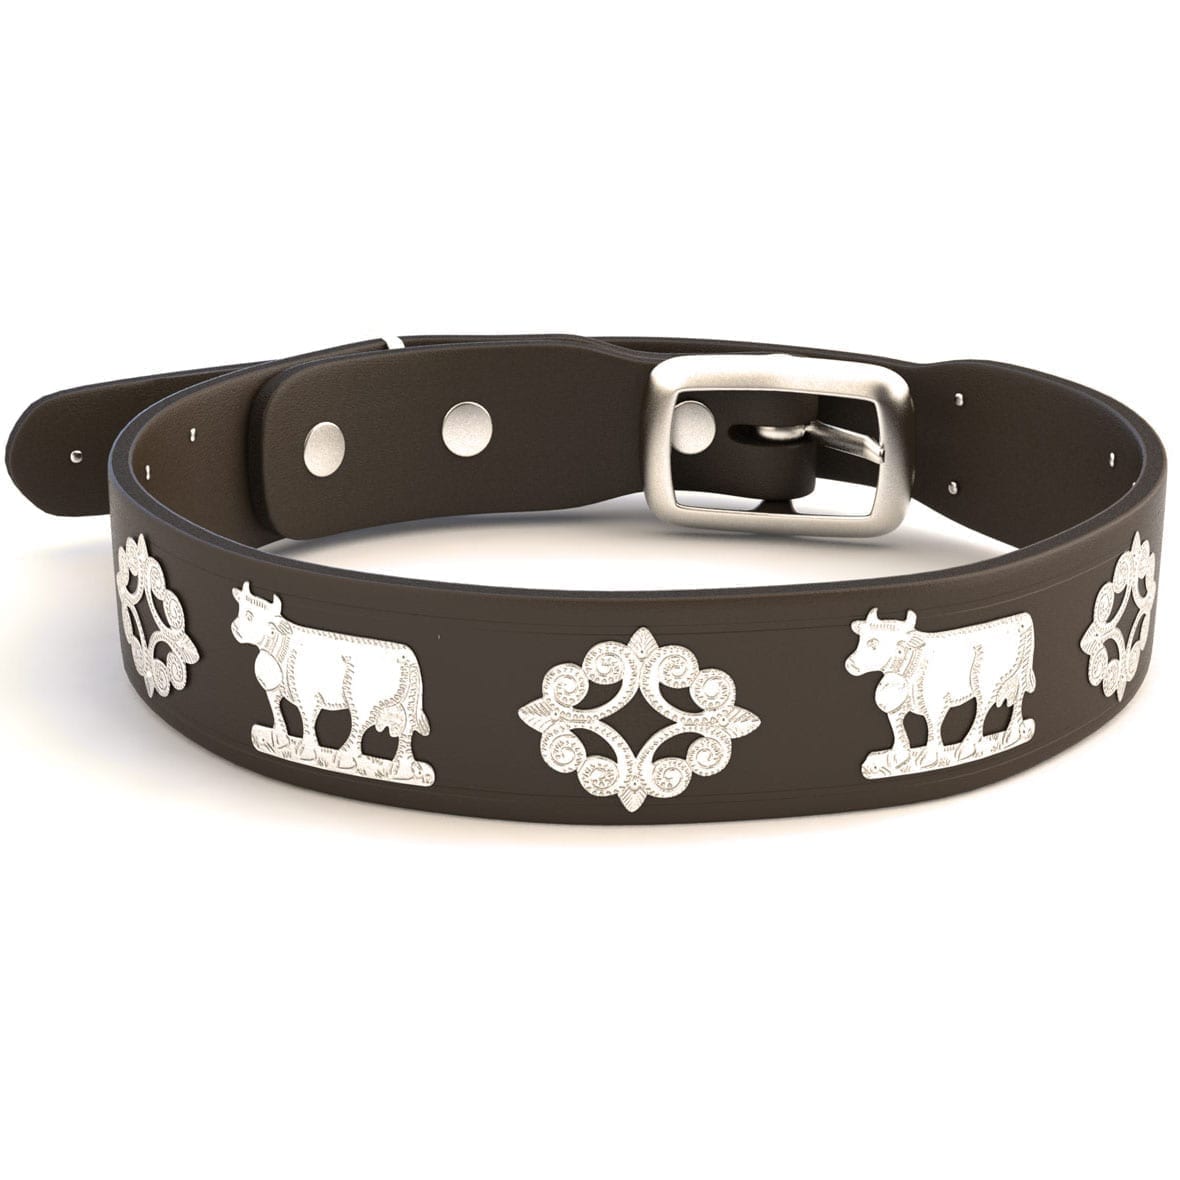 34 Hundehalsband-Ideen  hundehalsband, halsband, hunde